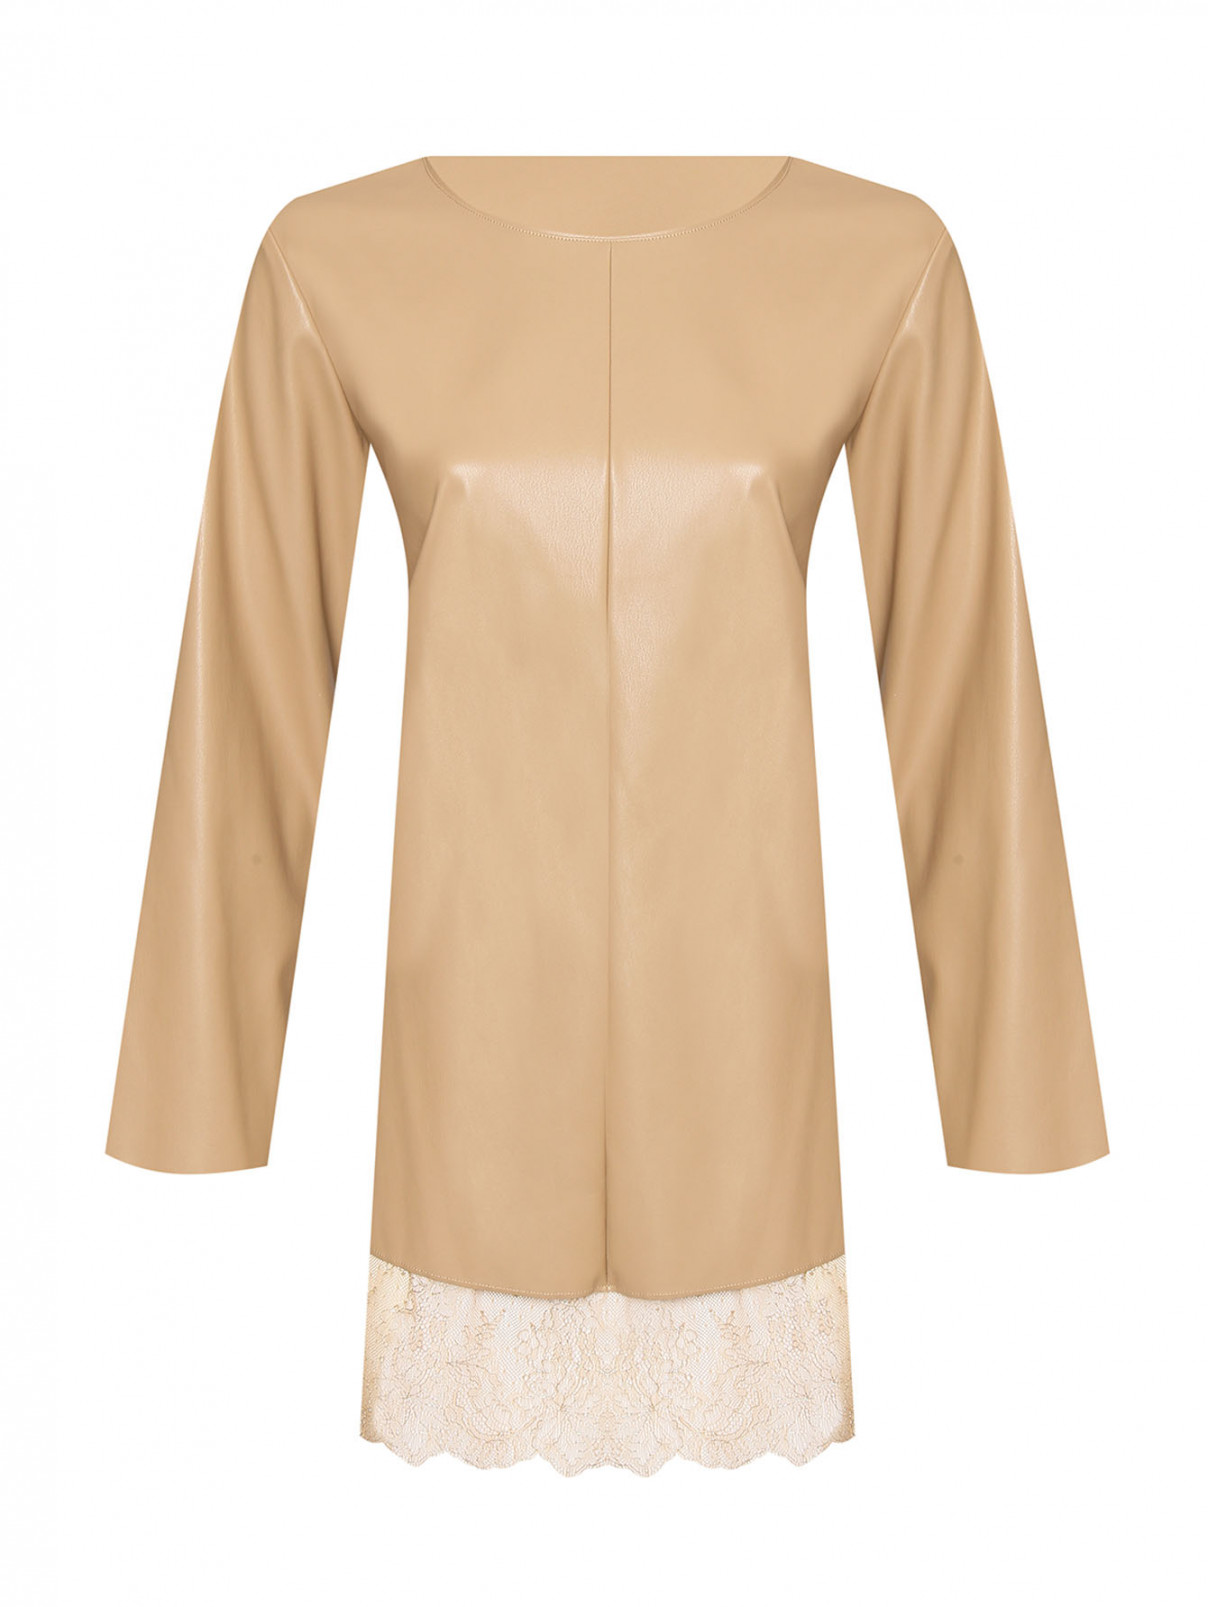 Блуза из эко-кожи с кружевной отделкой Marina Rinaldi  –  Общий вид  – Цвет:  Бежевый